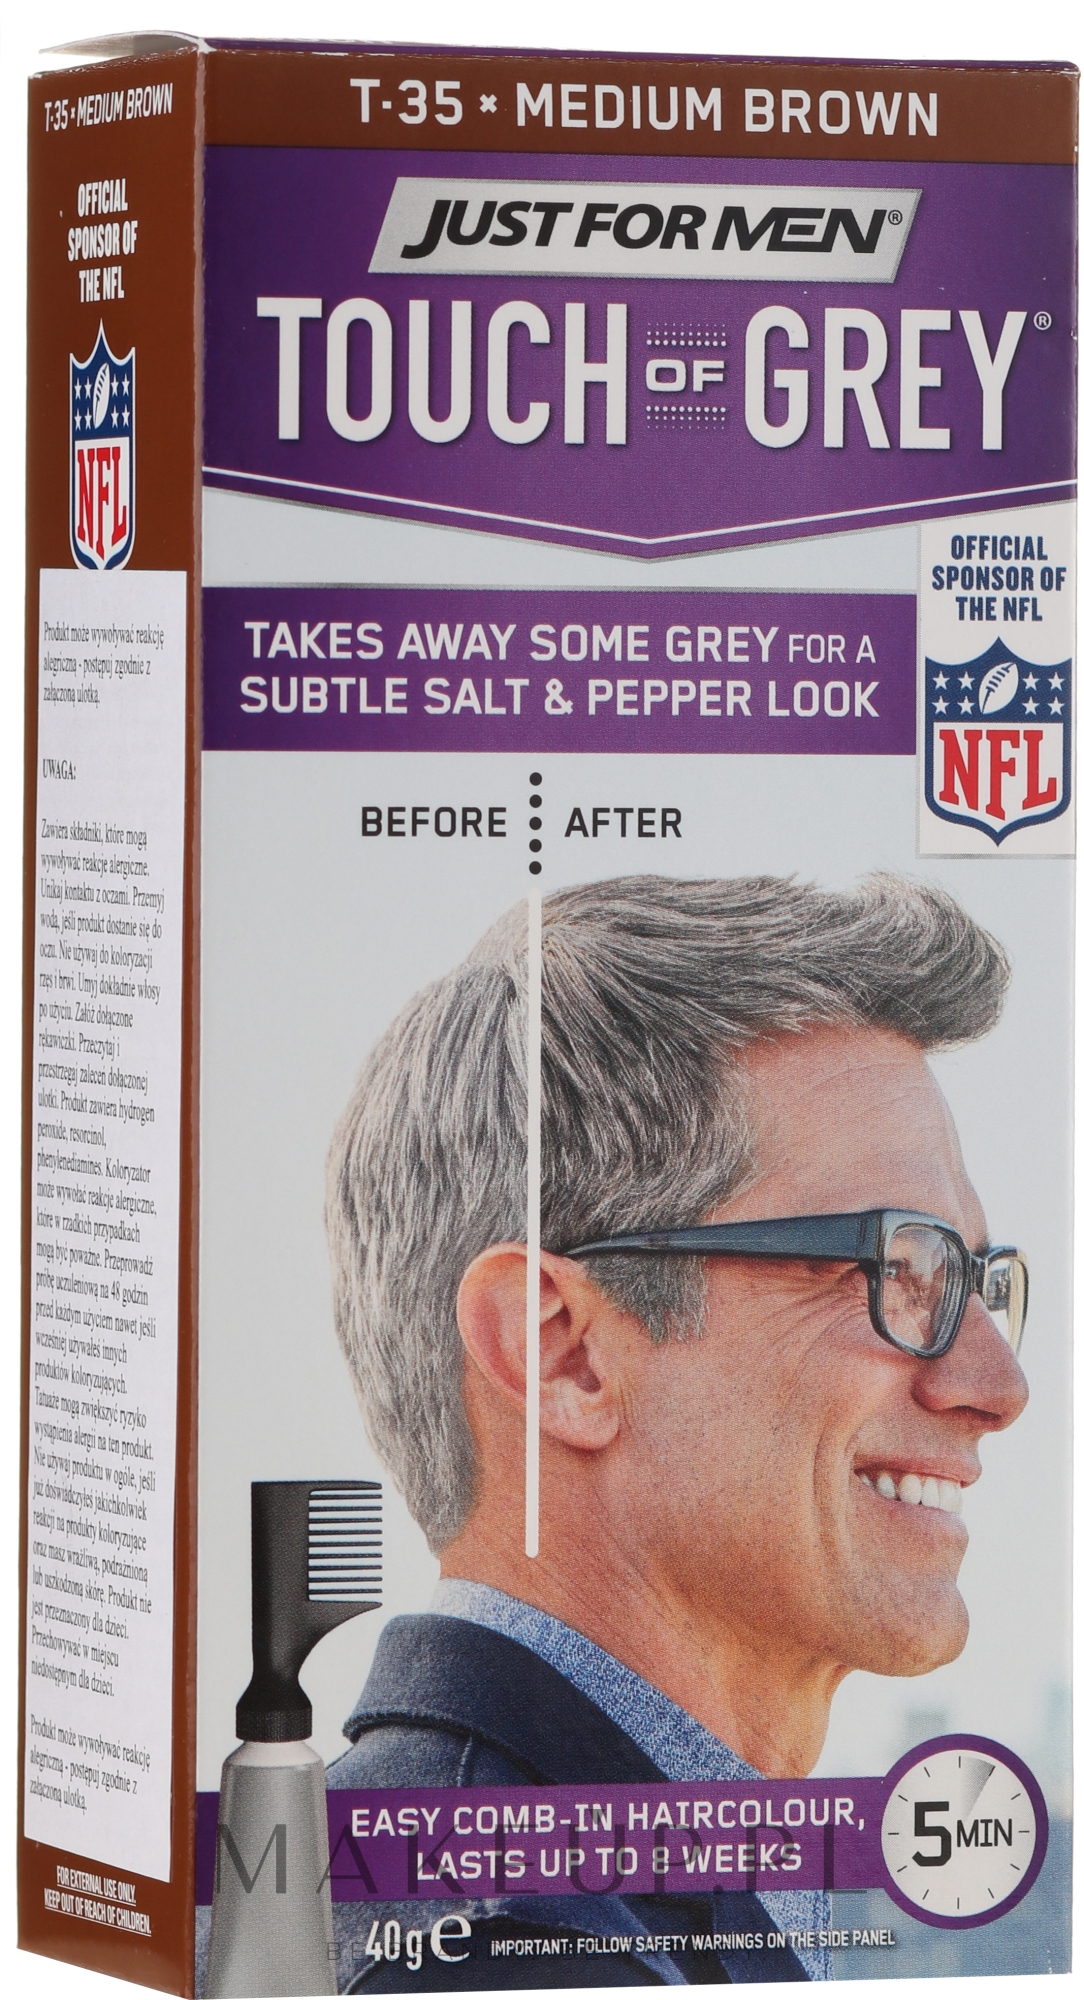 Farba do siwych włosów dla mężczyzn nadająca efekt pieprzu i soli - Just For Men Touch Of Gray — Zdjęcie T-35 - Medium Brown